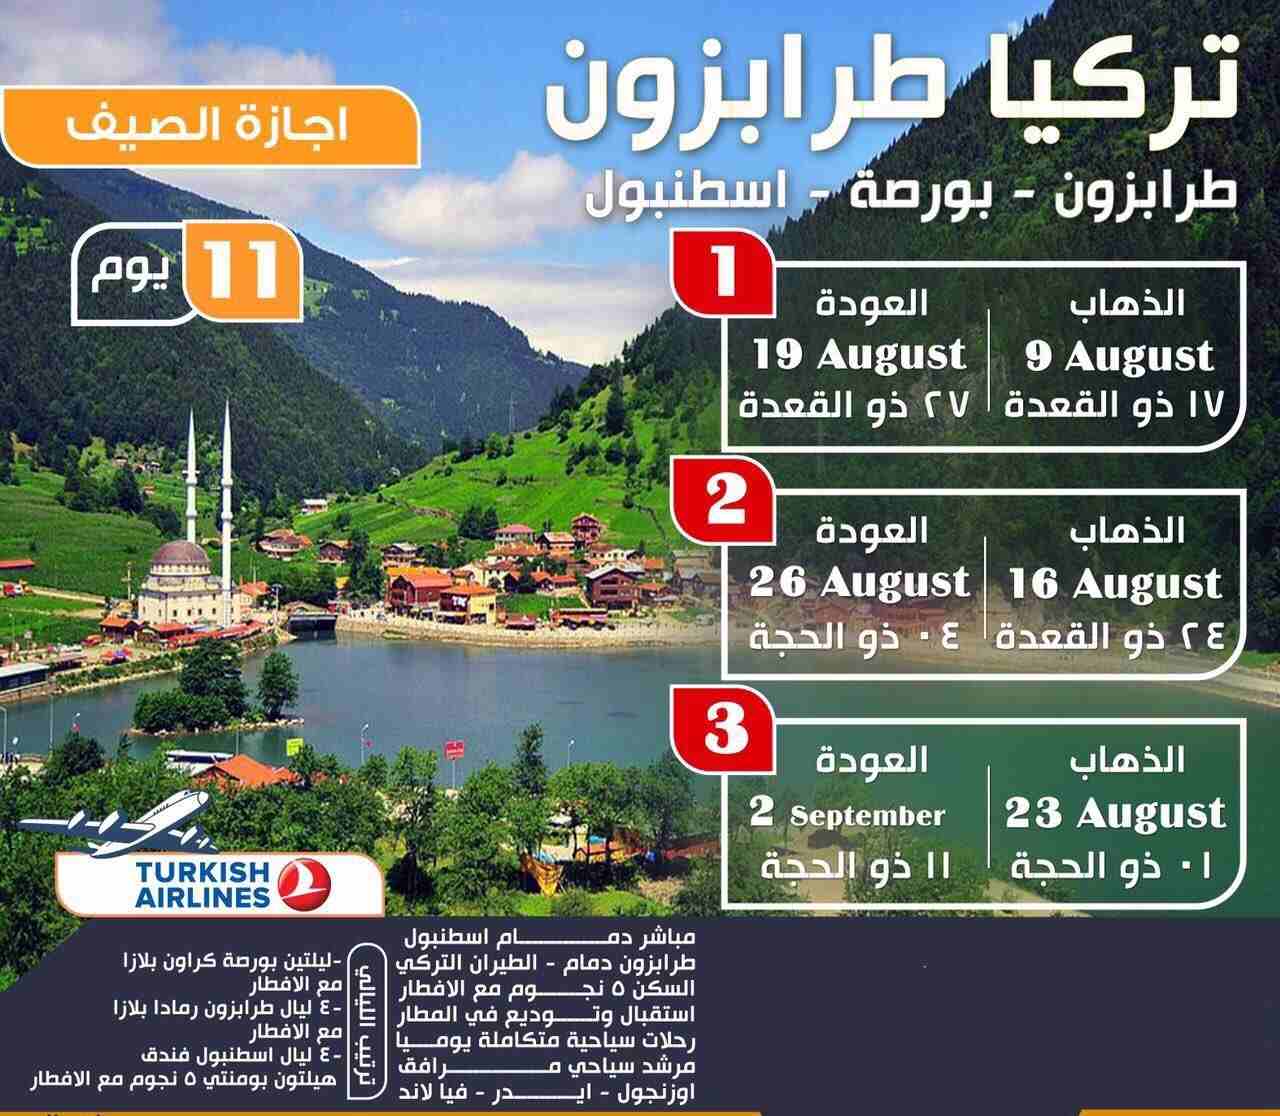 سياحة-و-سفرعروض سياحية في تركيا - برنامج سياحي في طرابزون لمدة 5 ايام


قائمة...